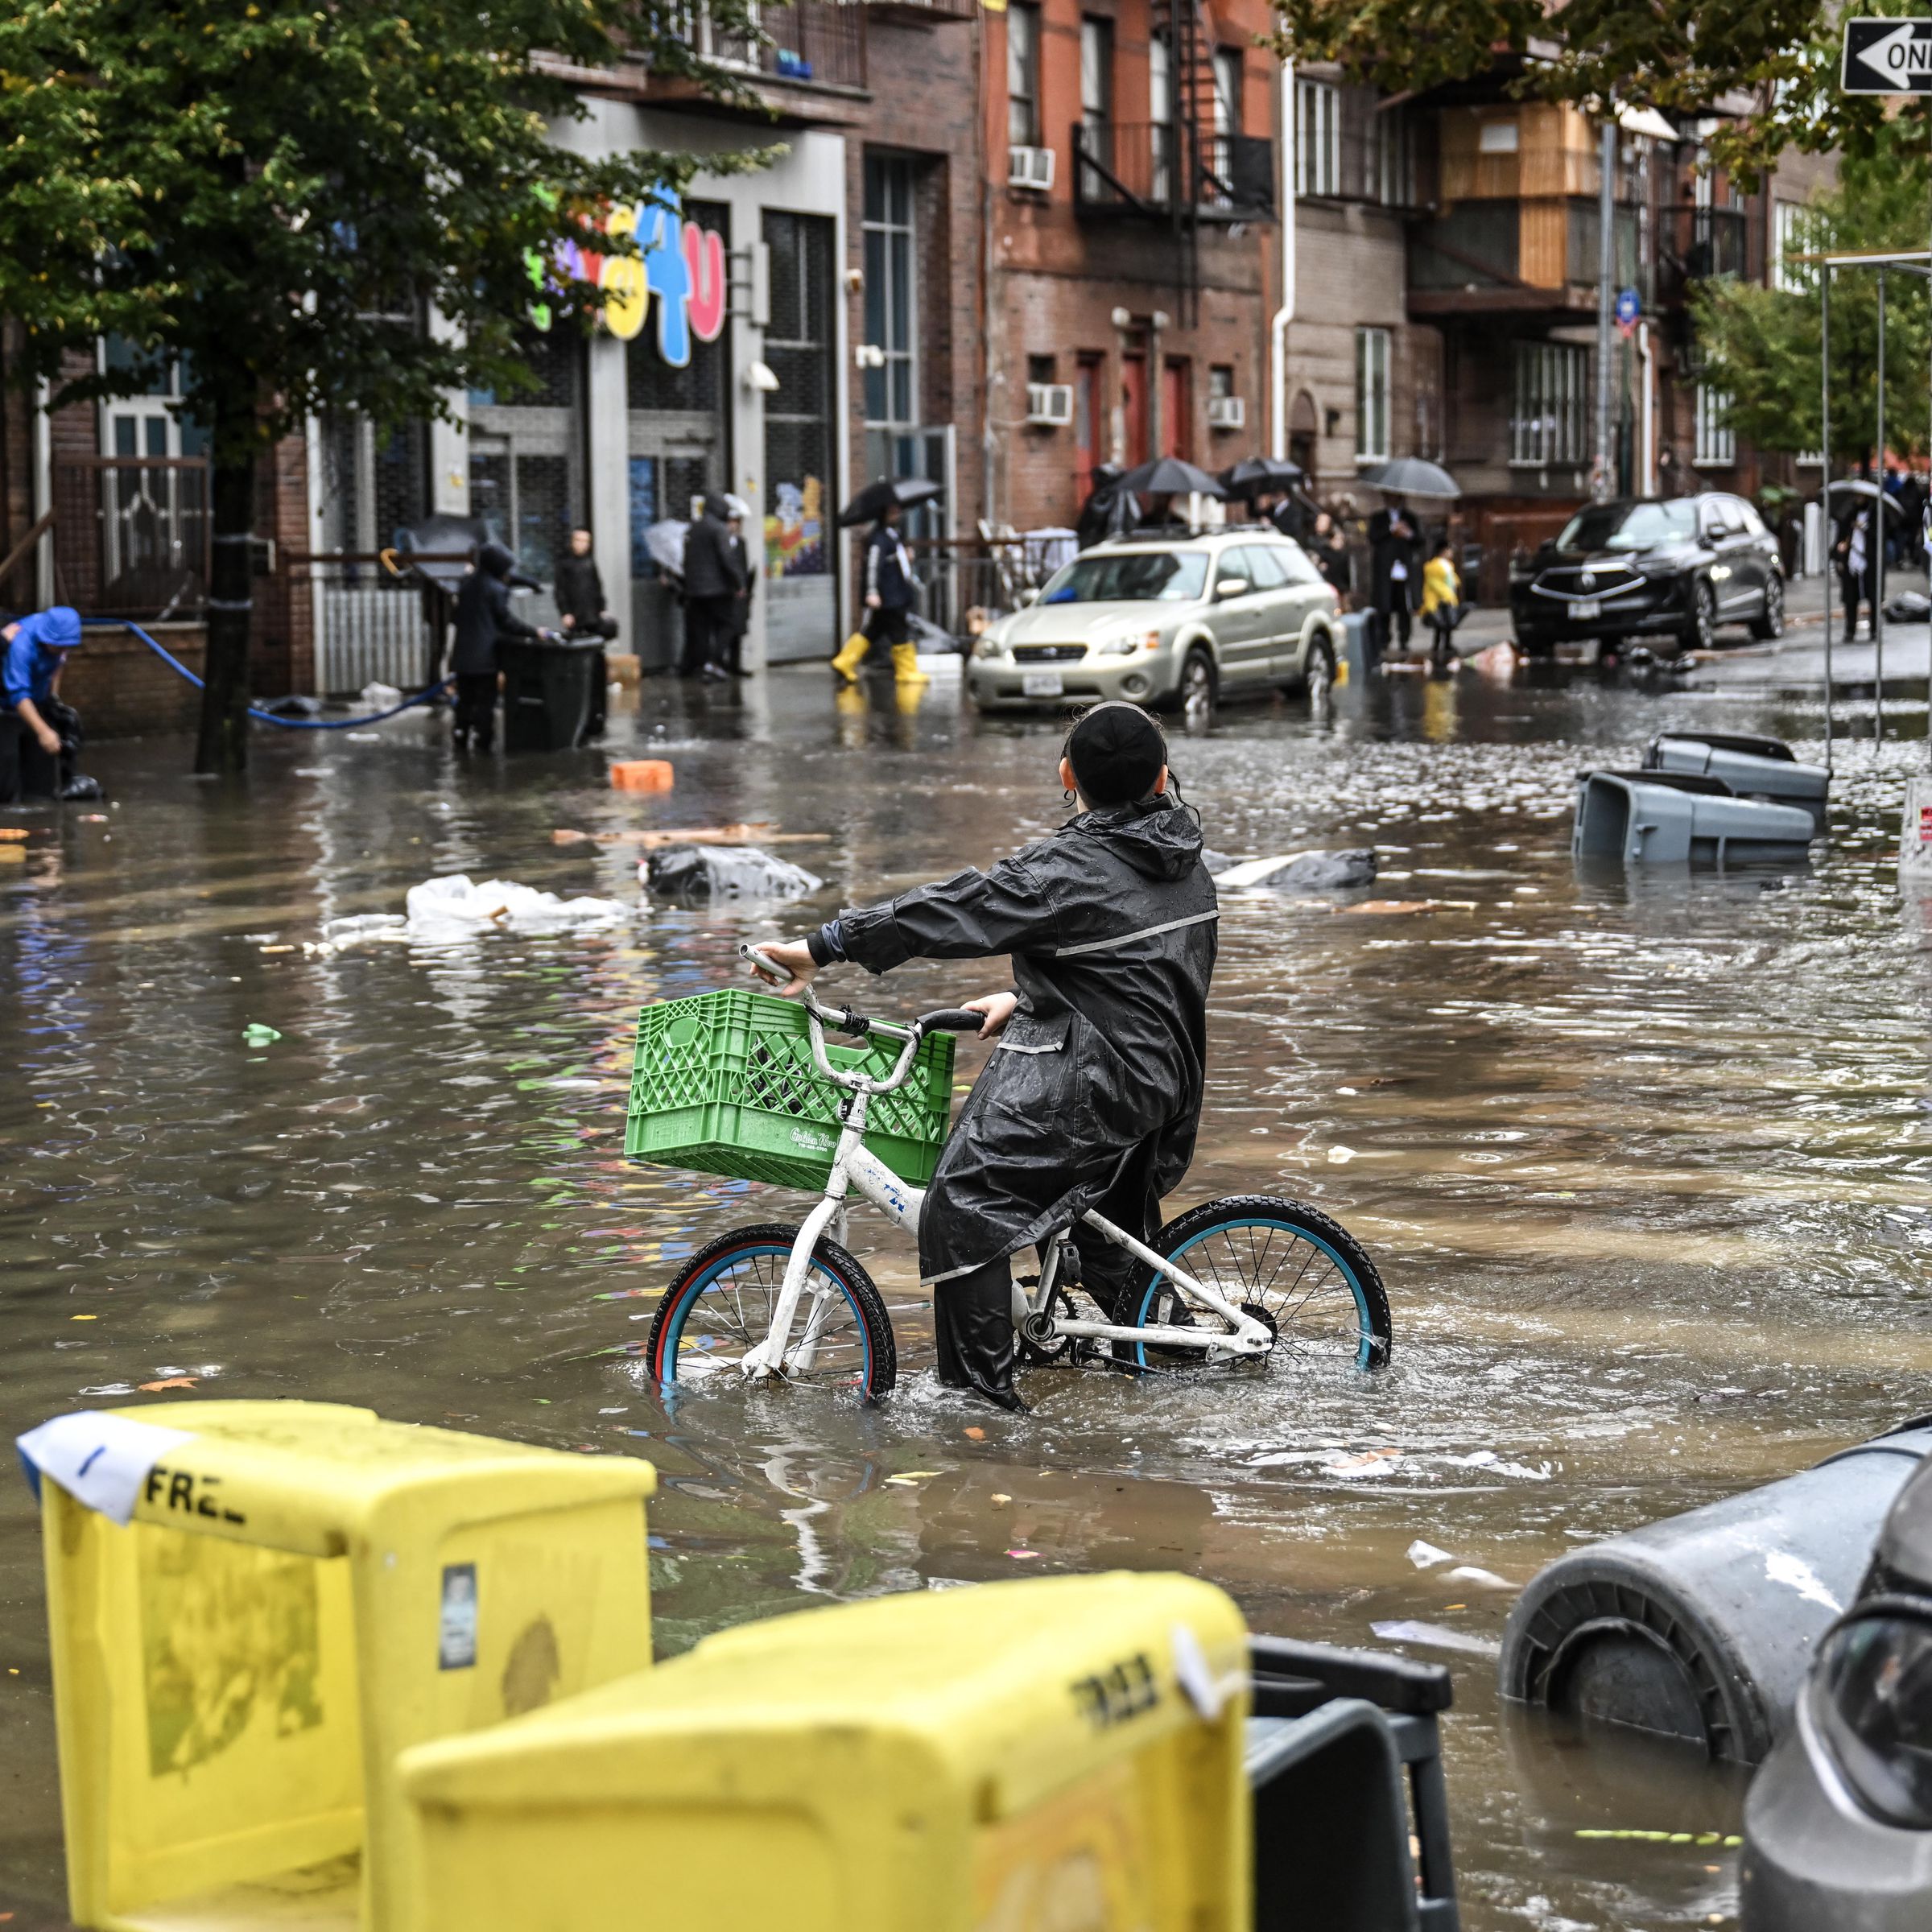 A biker and several pedestrians wade through a flooded street.